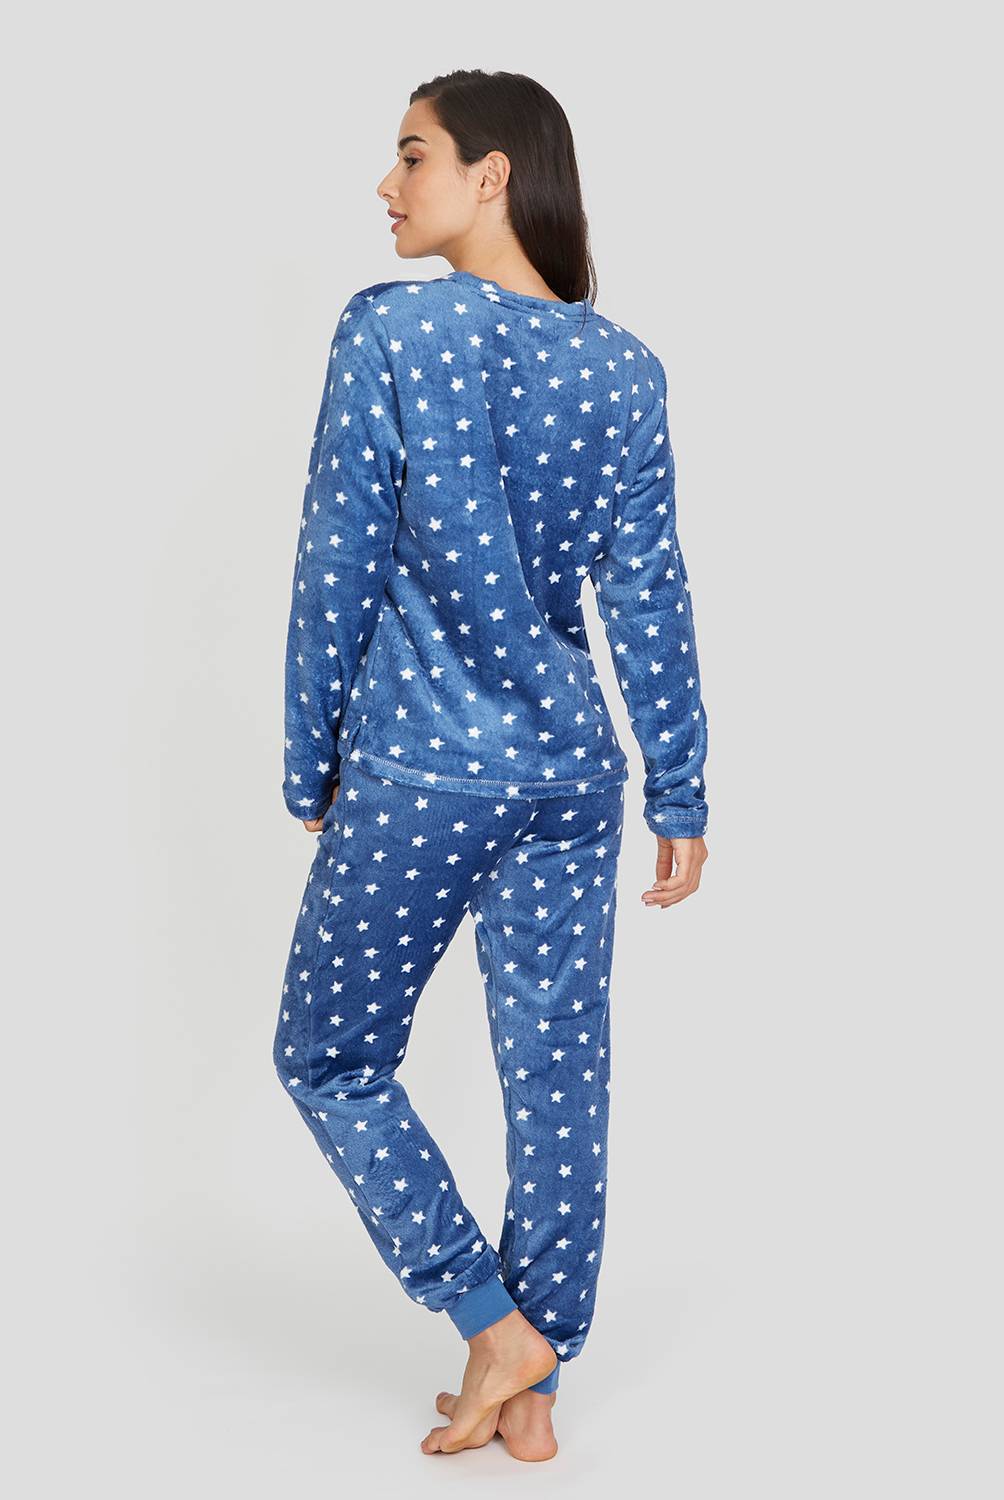 PALMERS - Pijama mujer manga larga